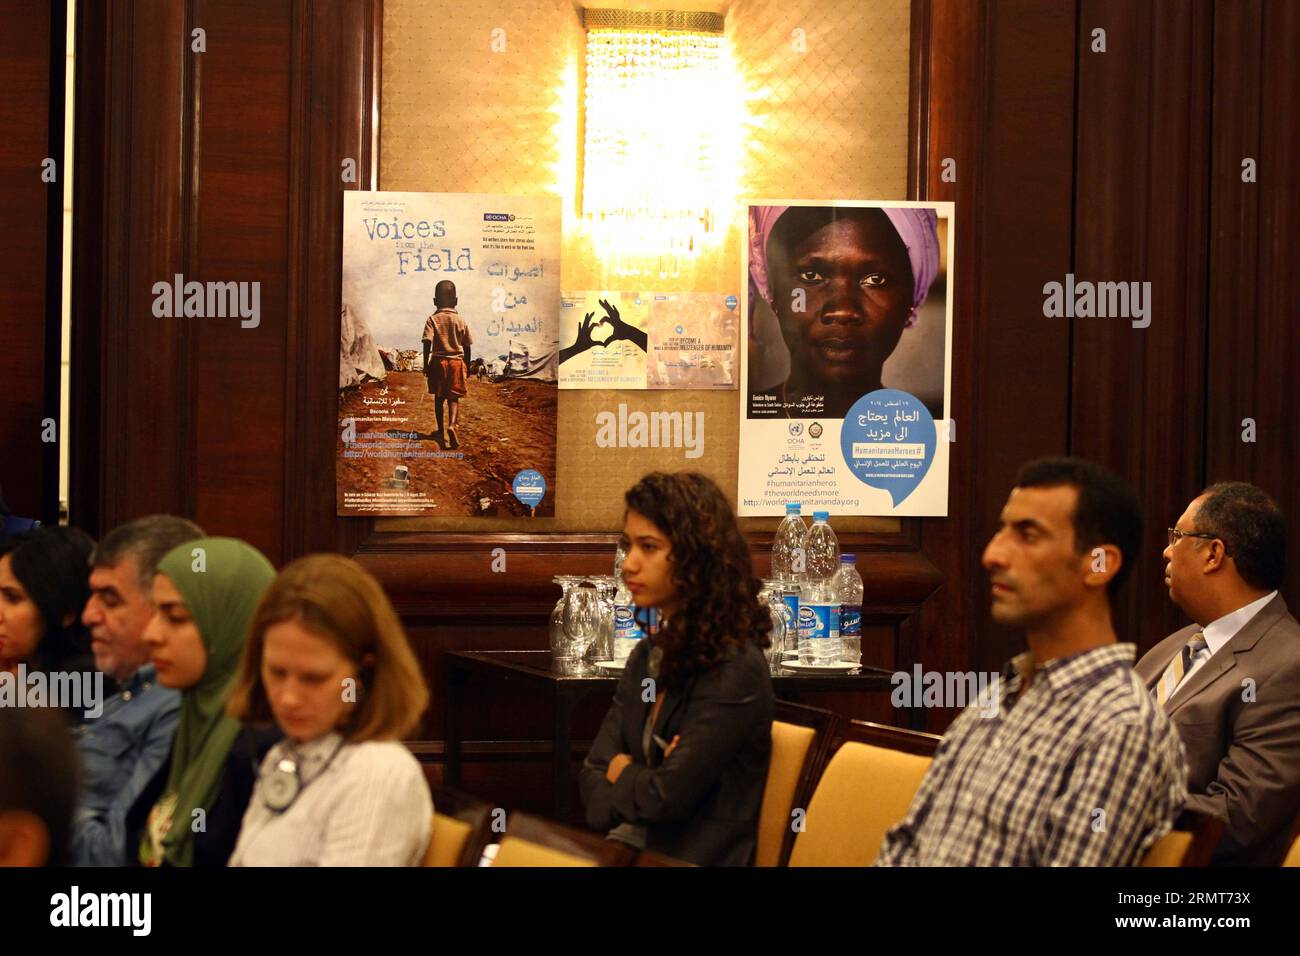 Plakate über humanitäre Hilfe sind auf einer Pressekonferenz zu sehen, die von humanitären Organisationen anlässlich des Welttages der humanitären Hilfe in Kairo, Ägypten, 19. August 2014, abgehalten wird. ) ÄGYPTEN-KAIRO-WELT TAG der HUMANITÄREN HILFE AhmedxGomaa PUBLICATIONxNOTxINxCHN Poster über humanitäre Hilfe sind Seen AUF einer Pressekonferenz Held von HUMANITÄREN Organisationen anlässlich des Welttages der HUMANITÄREN Hilfe in Kairo Ägypten 19. August 2014 Ägypten Kairo Welt Tag der HUMANITÄREN Hilfe PUBLICATIONxNOTxINxCHN Stockfoto